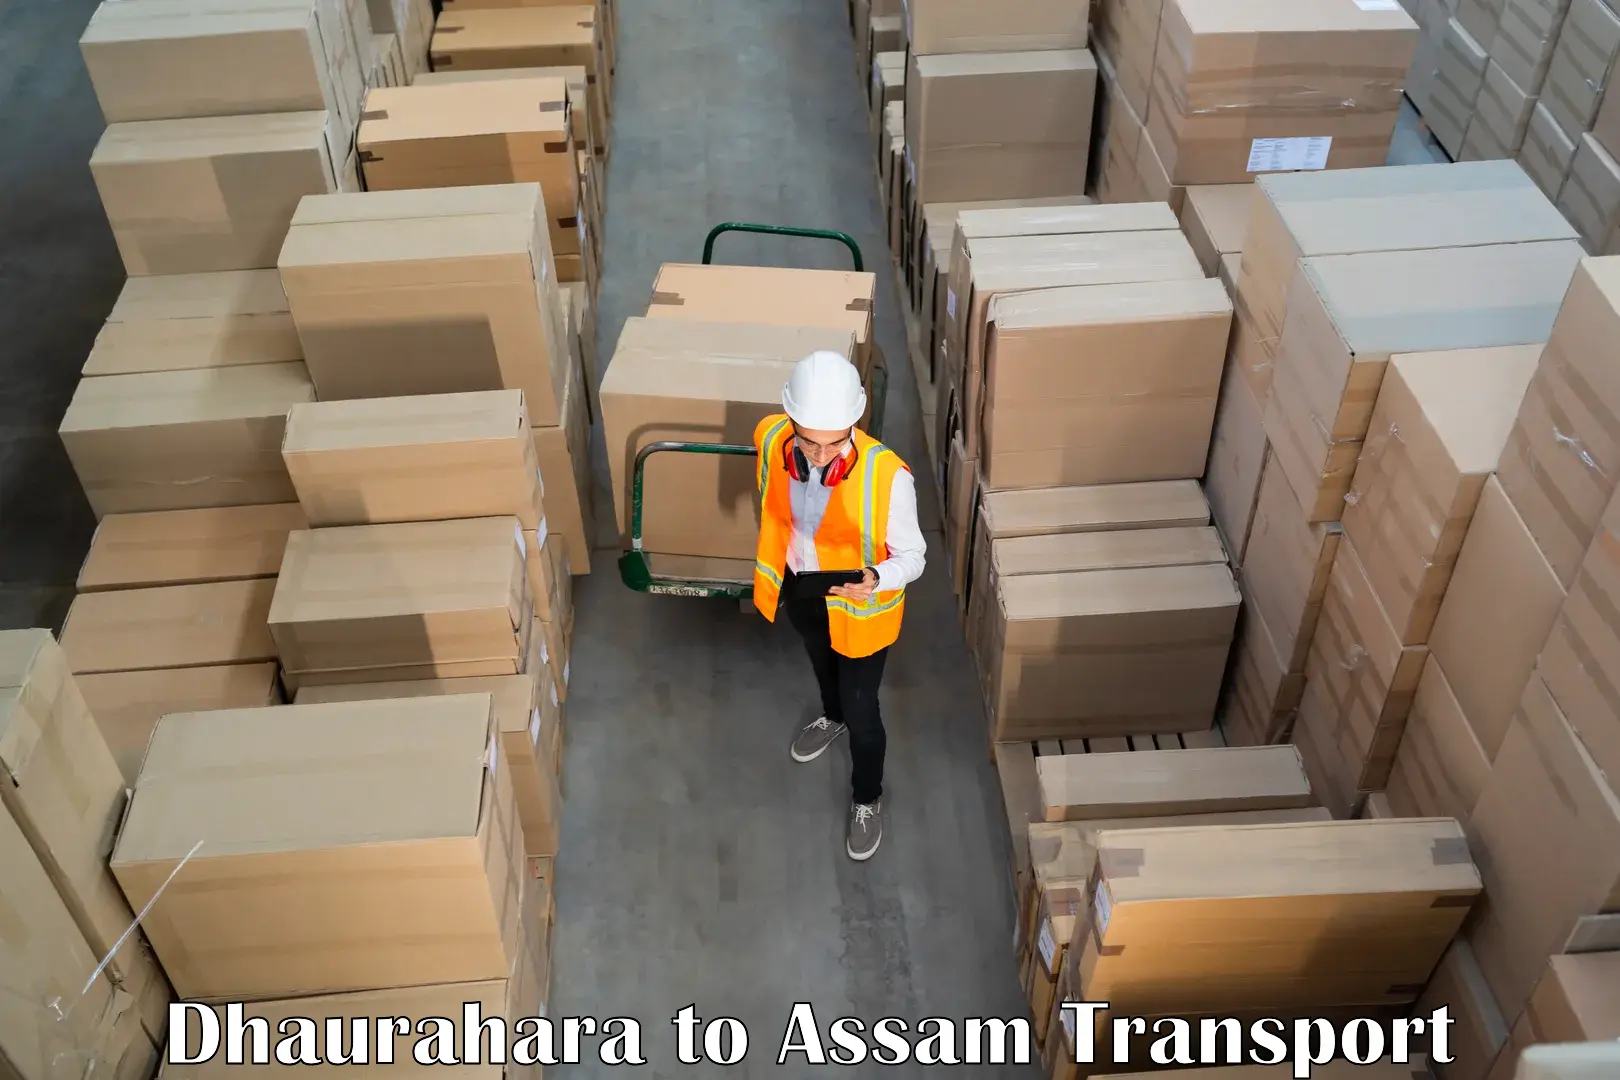 Cargo transportation services Dhaurahara to Kalgachia